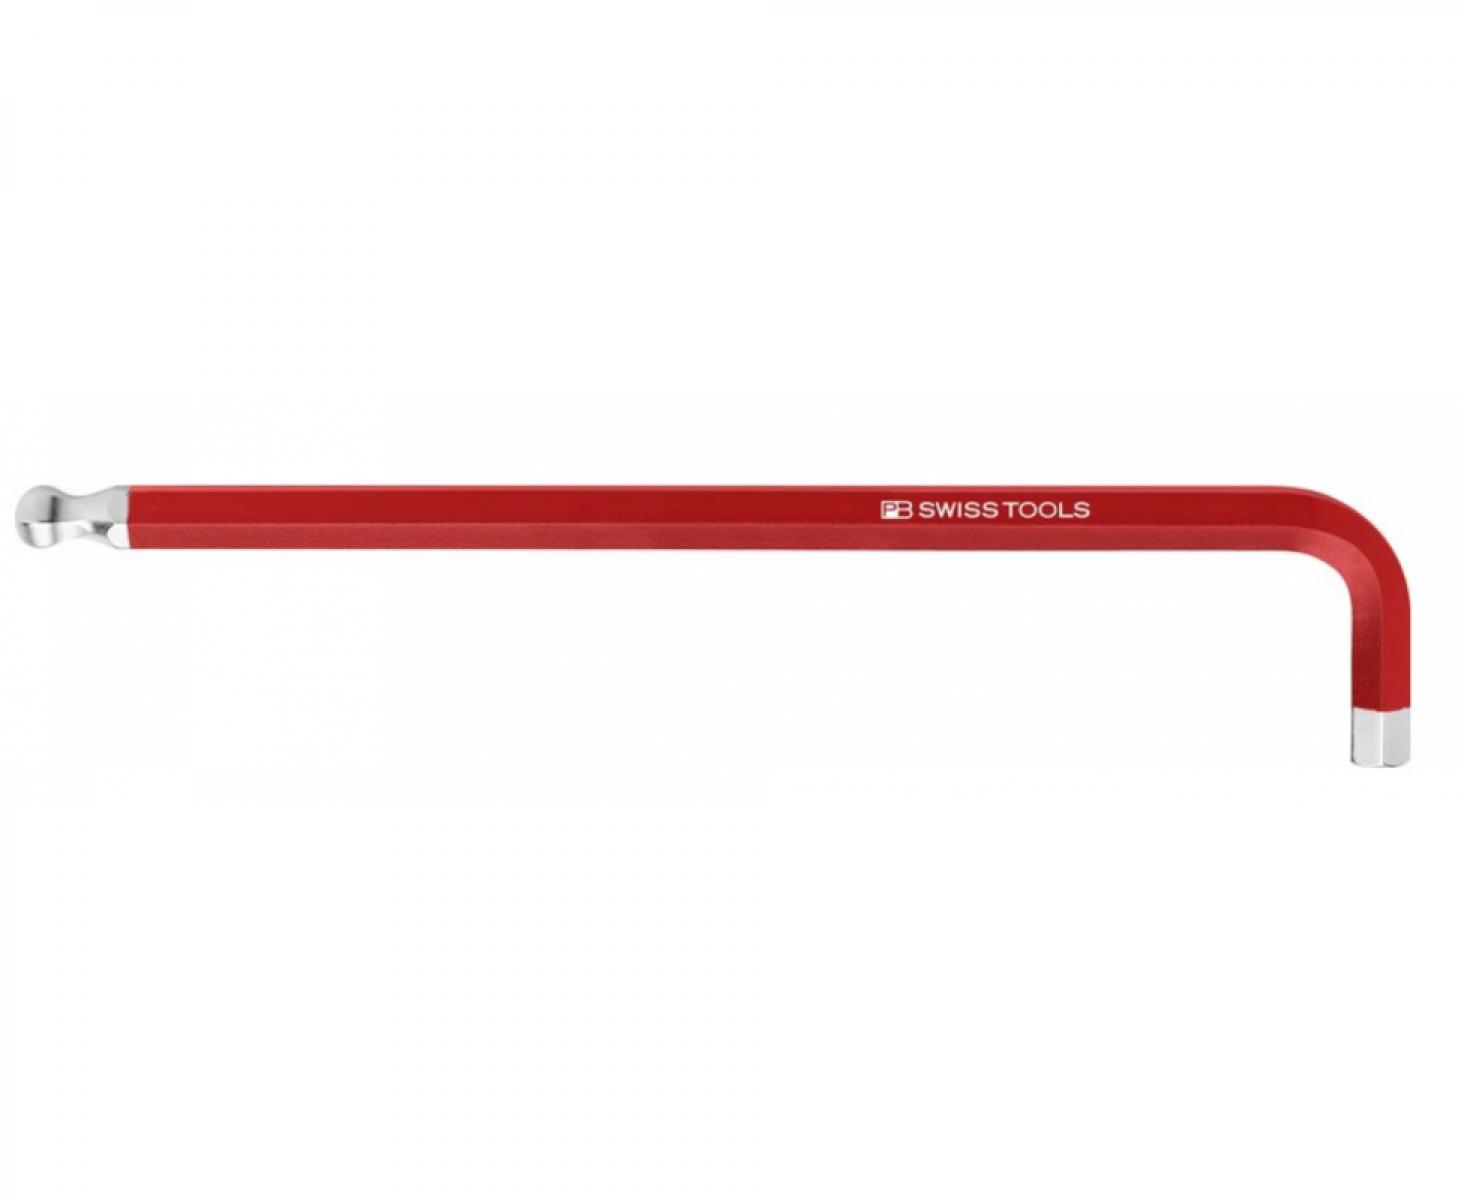 Ключ штифтовый HEX длинный PB Swiss Tools PB 212L.10 RE со сферической головкой, красный M10